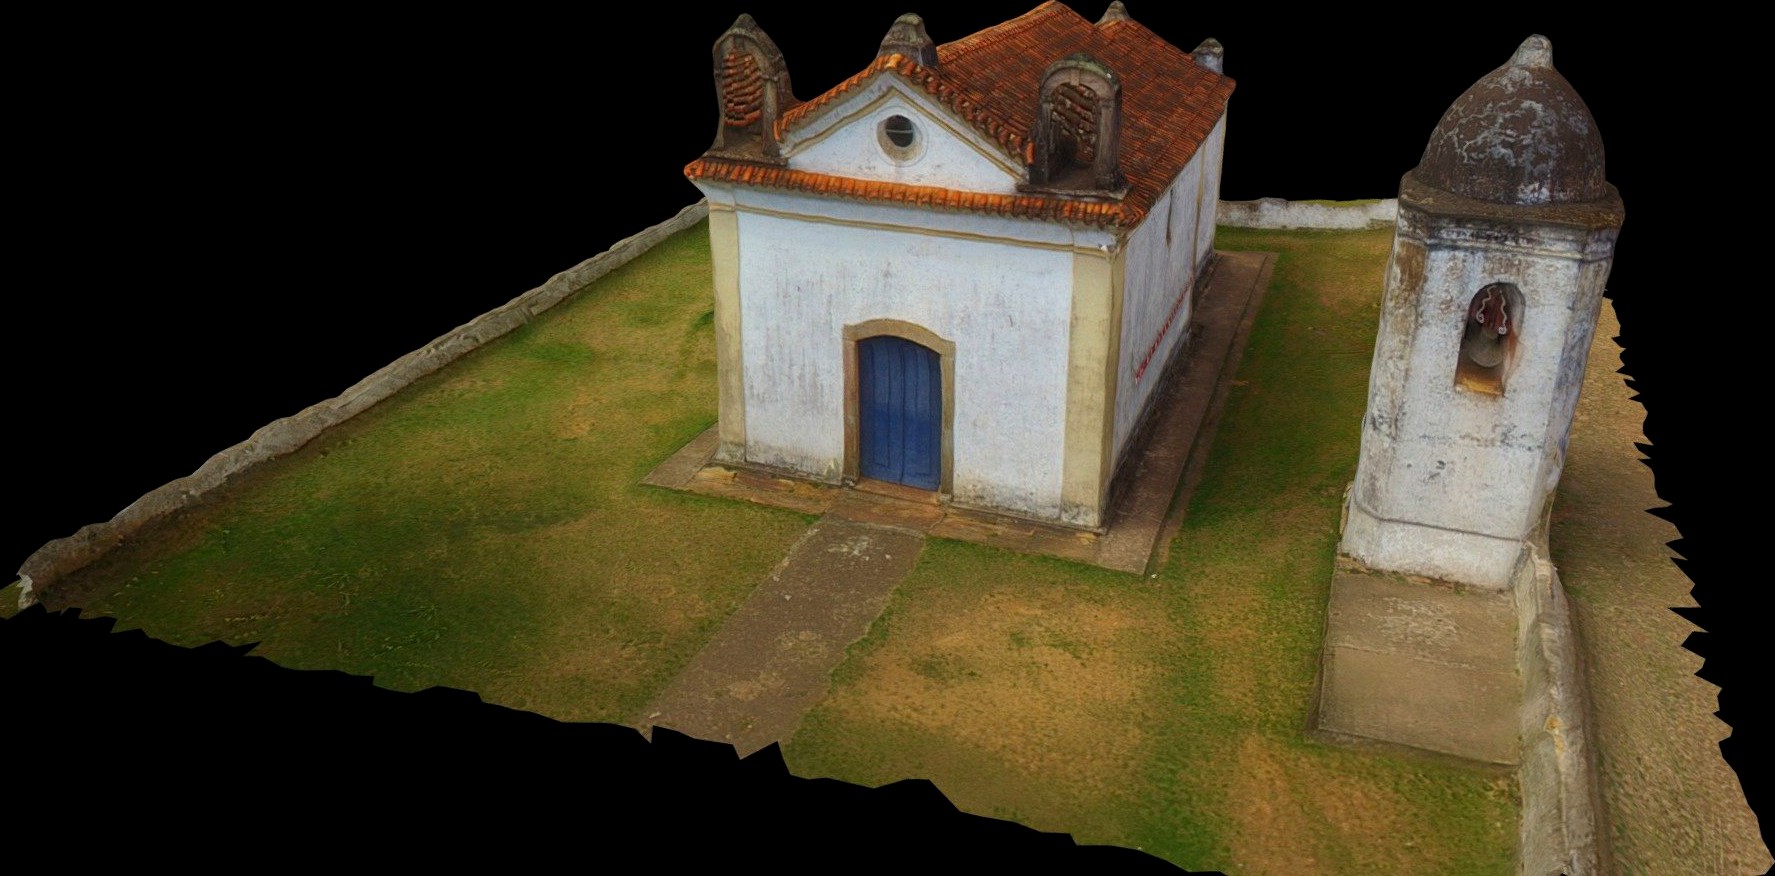 Capela de São Sebastião